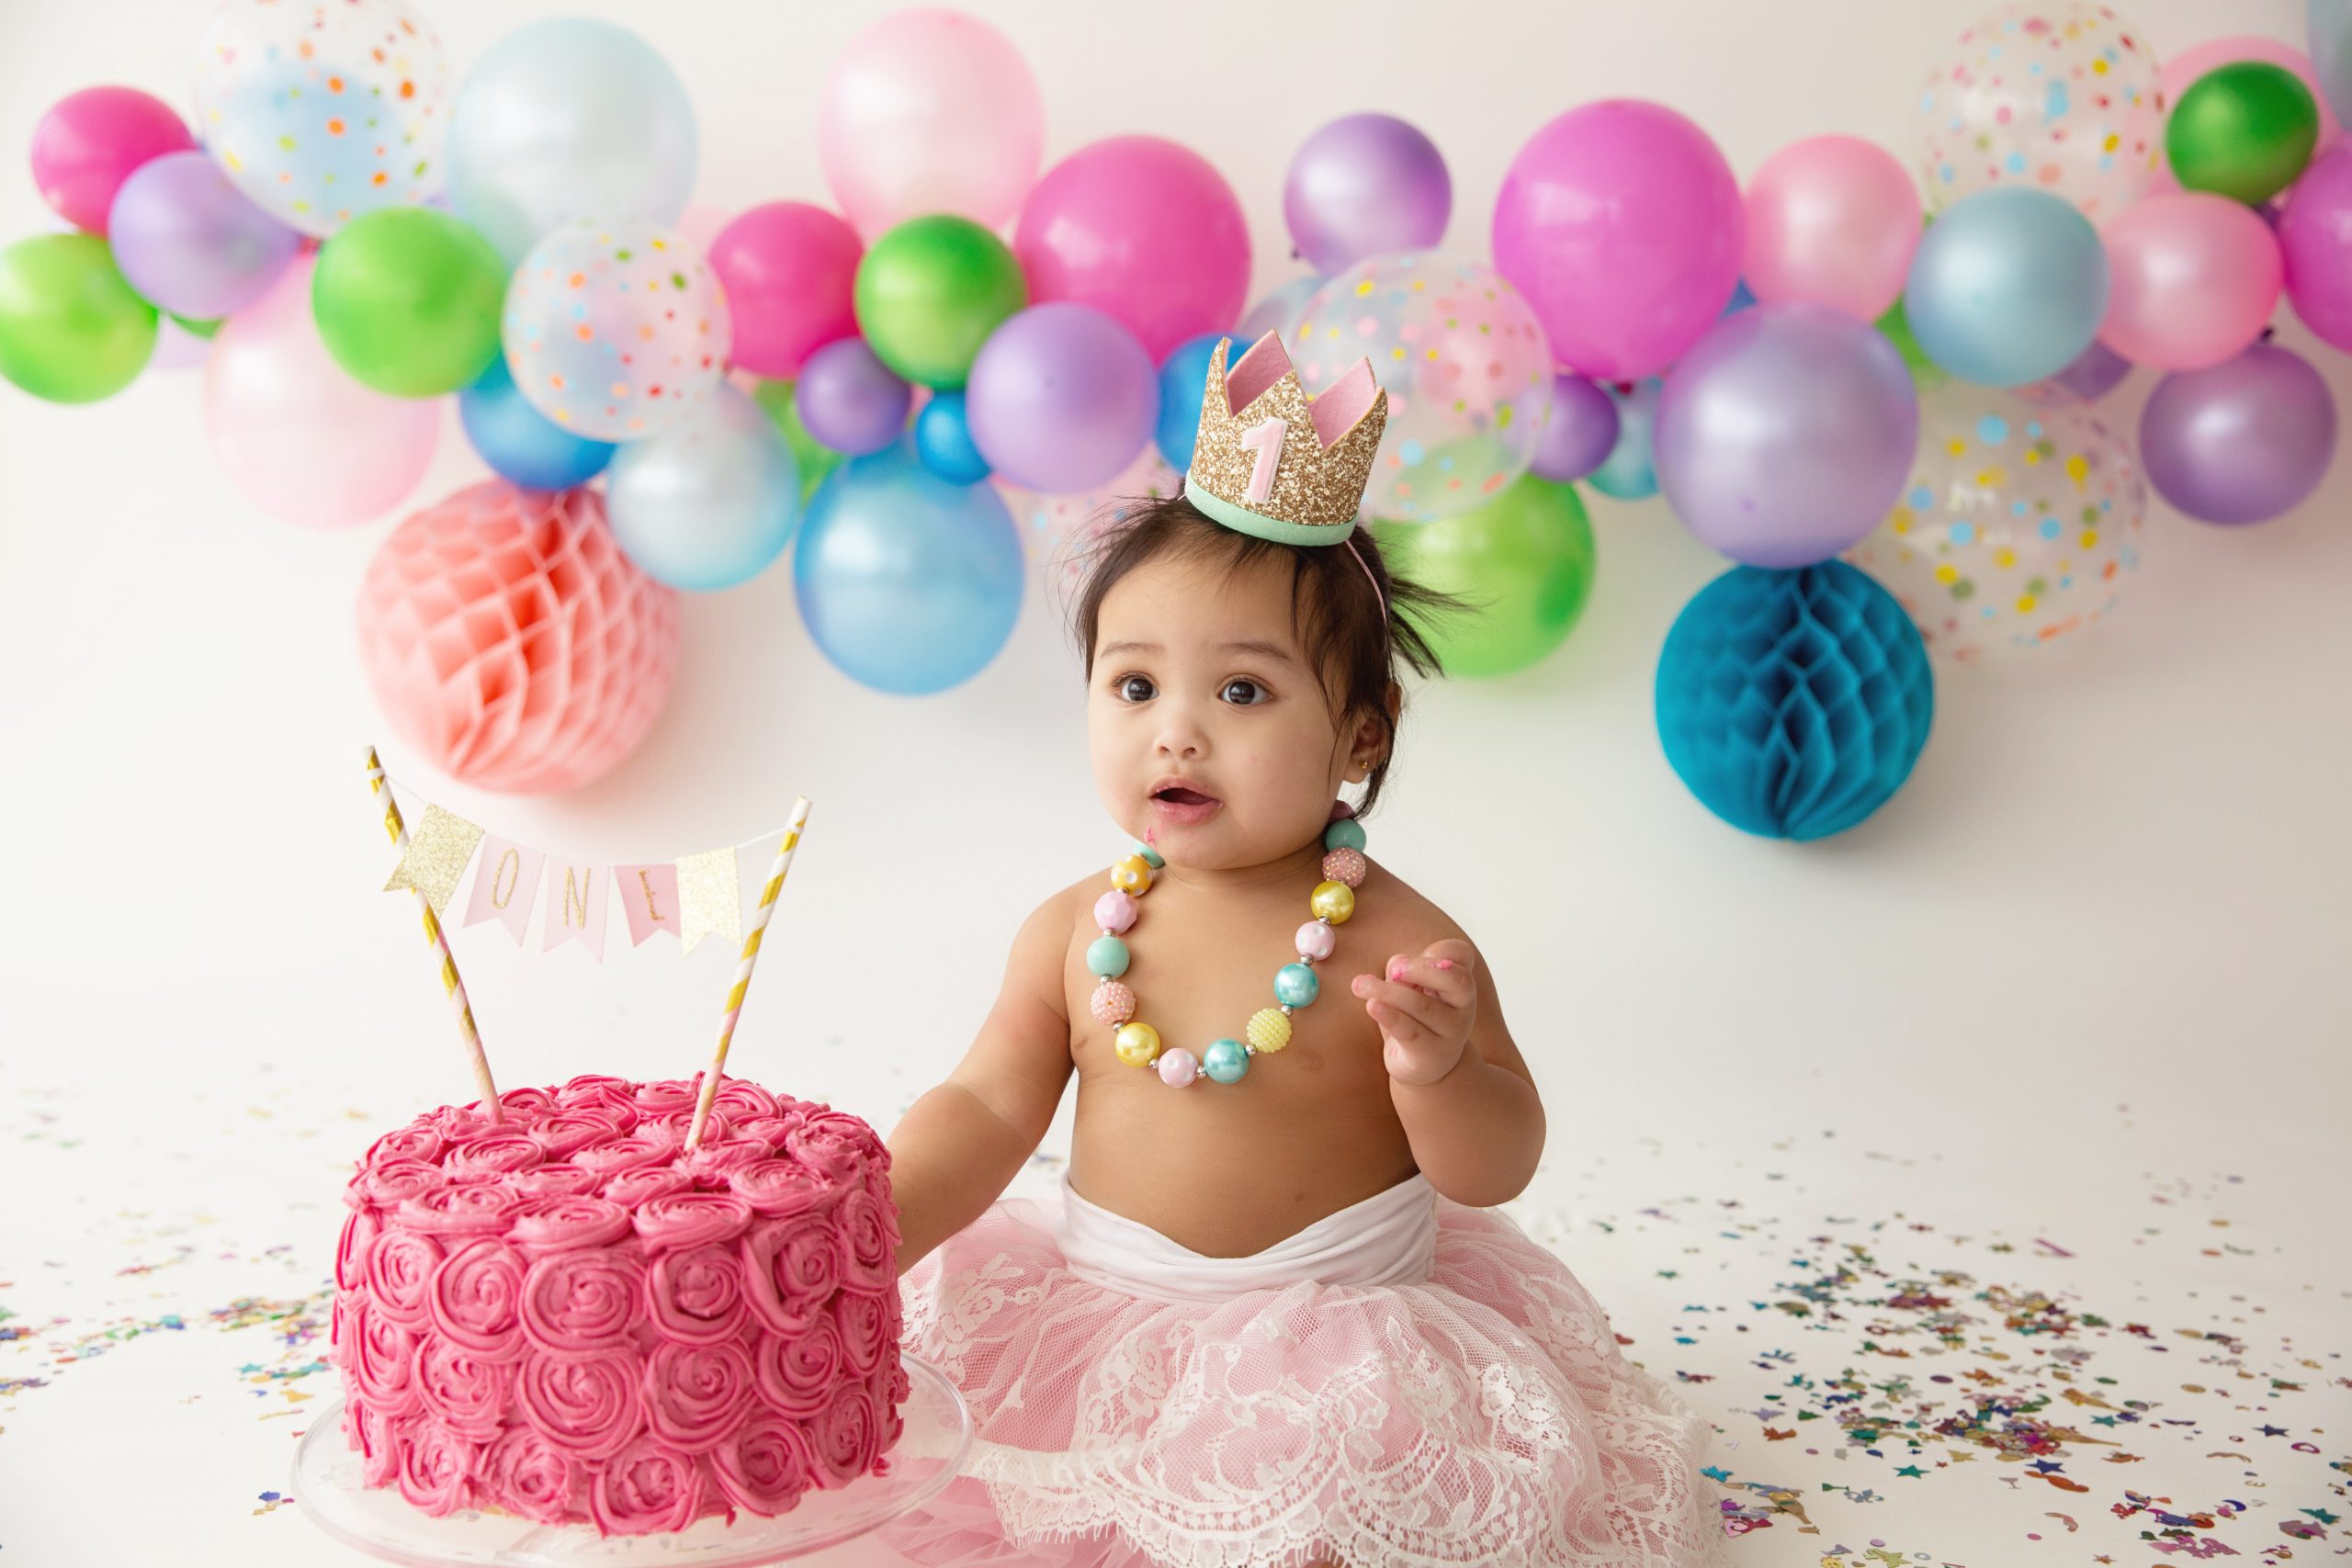 Cake Smash - Baby Photography UAE